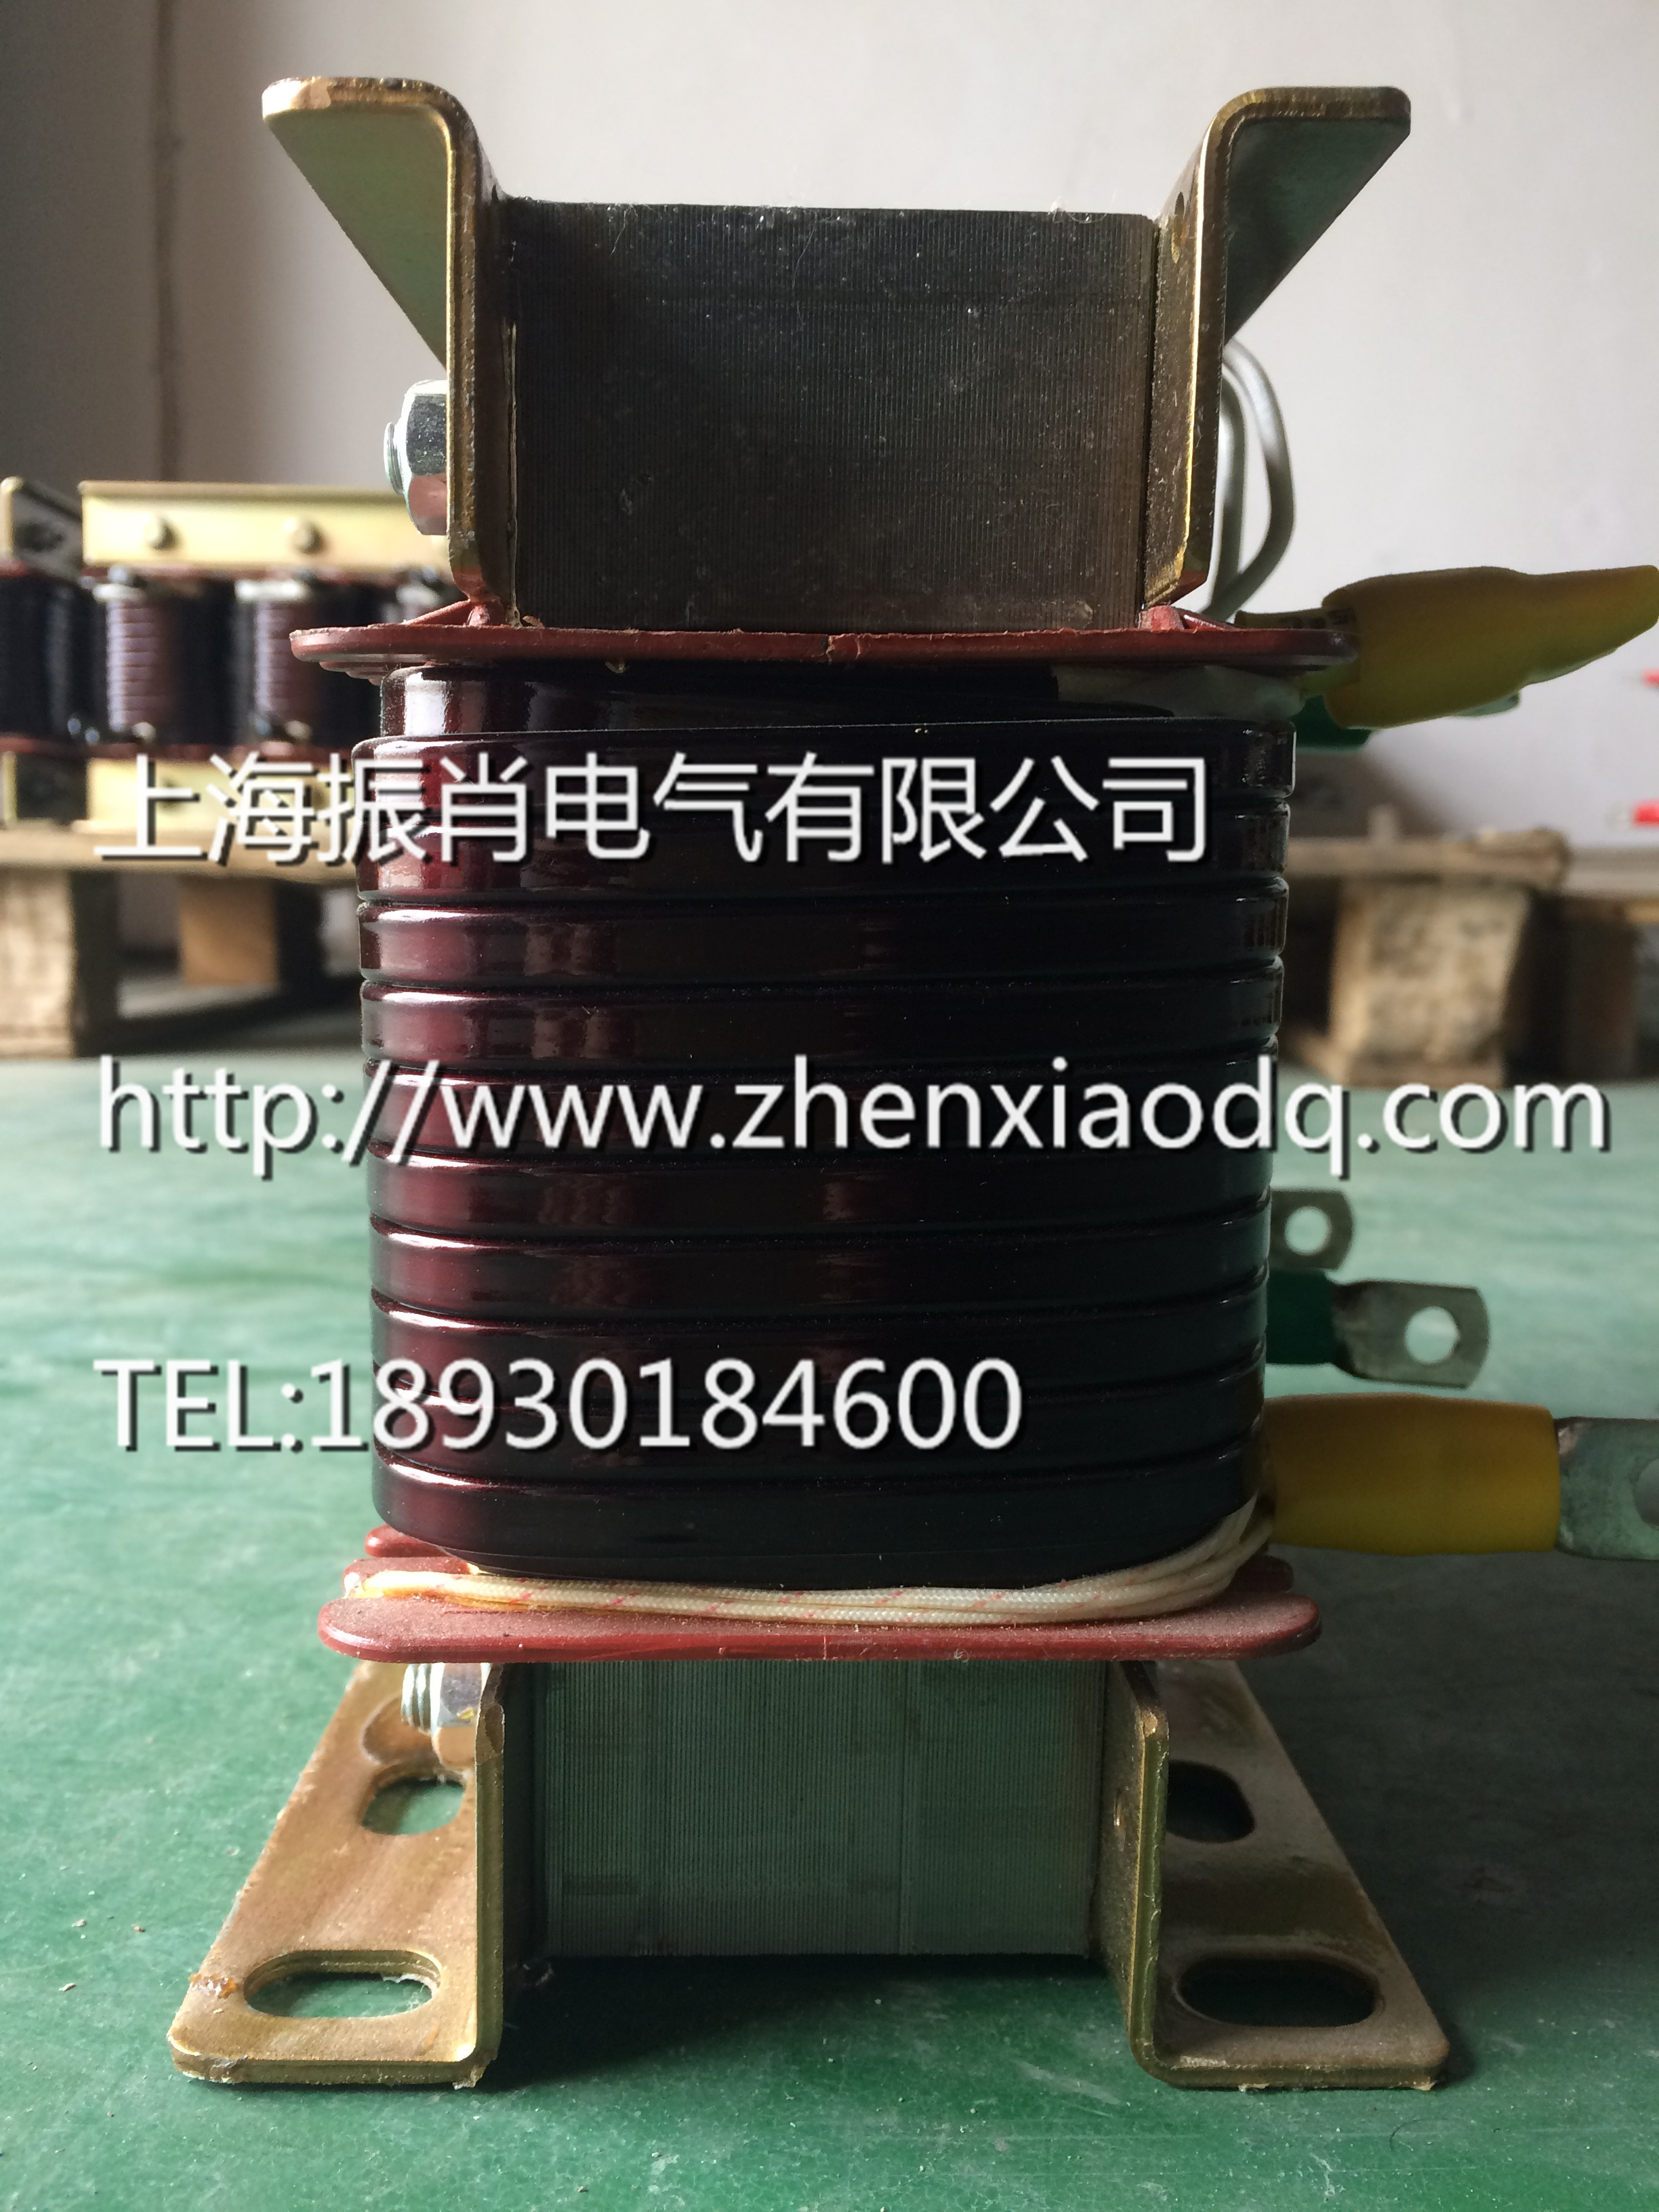 上海市串联电抗器生产厂家厂家供应串联电抗器 上海串联电抗器生产厂家